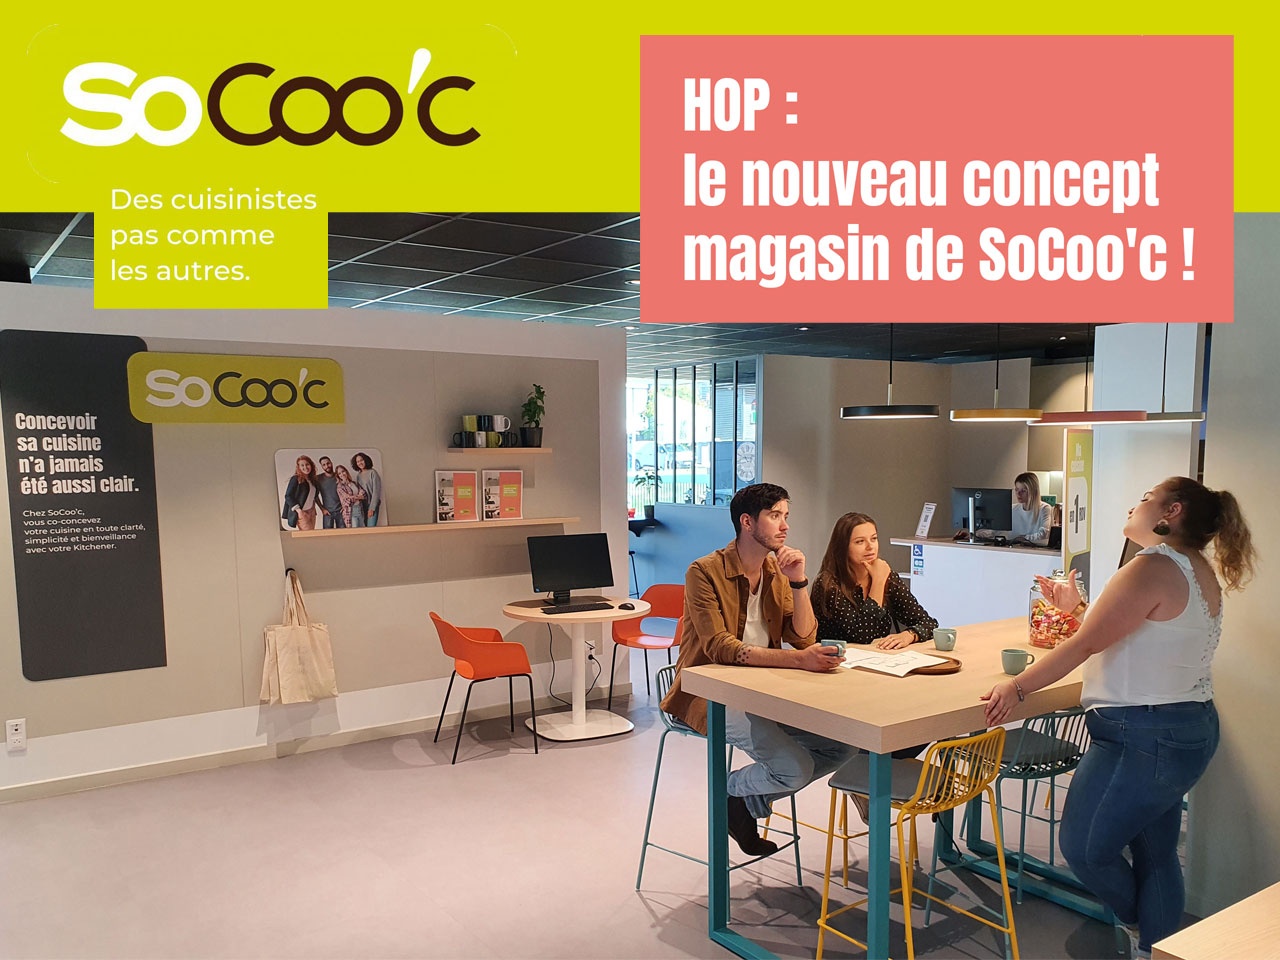 SoCoo’c dévoile HOP :  son nouveau concept  magasin !